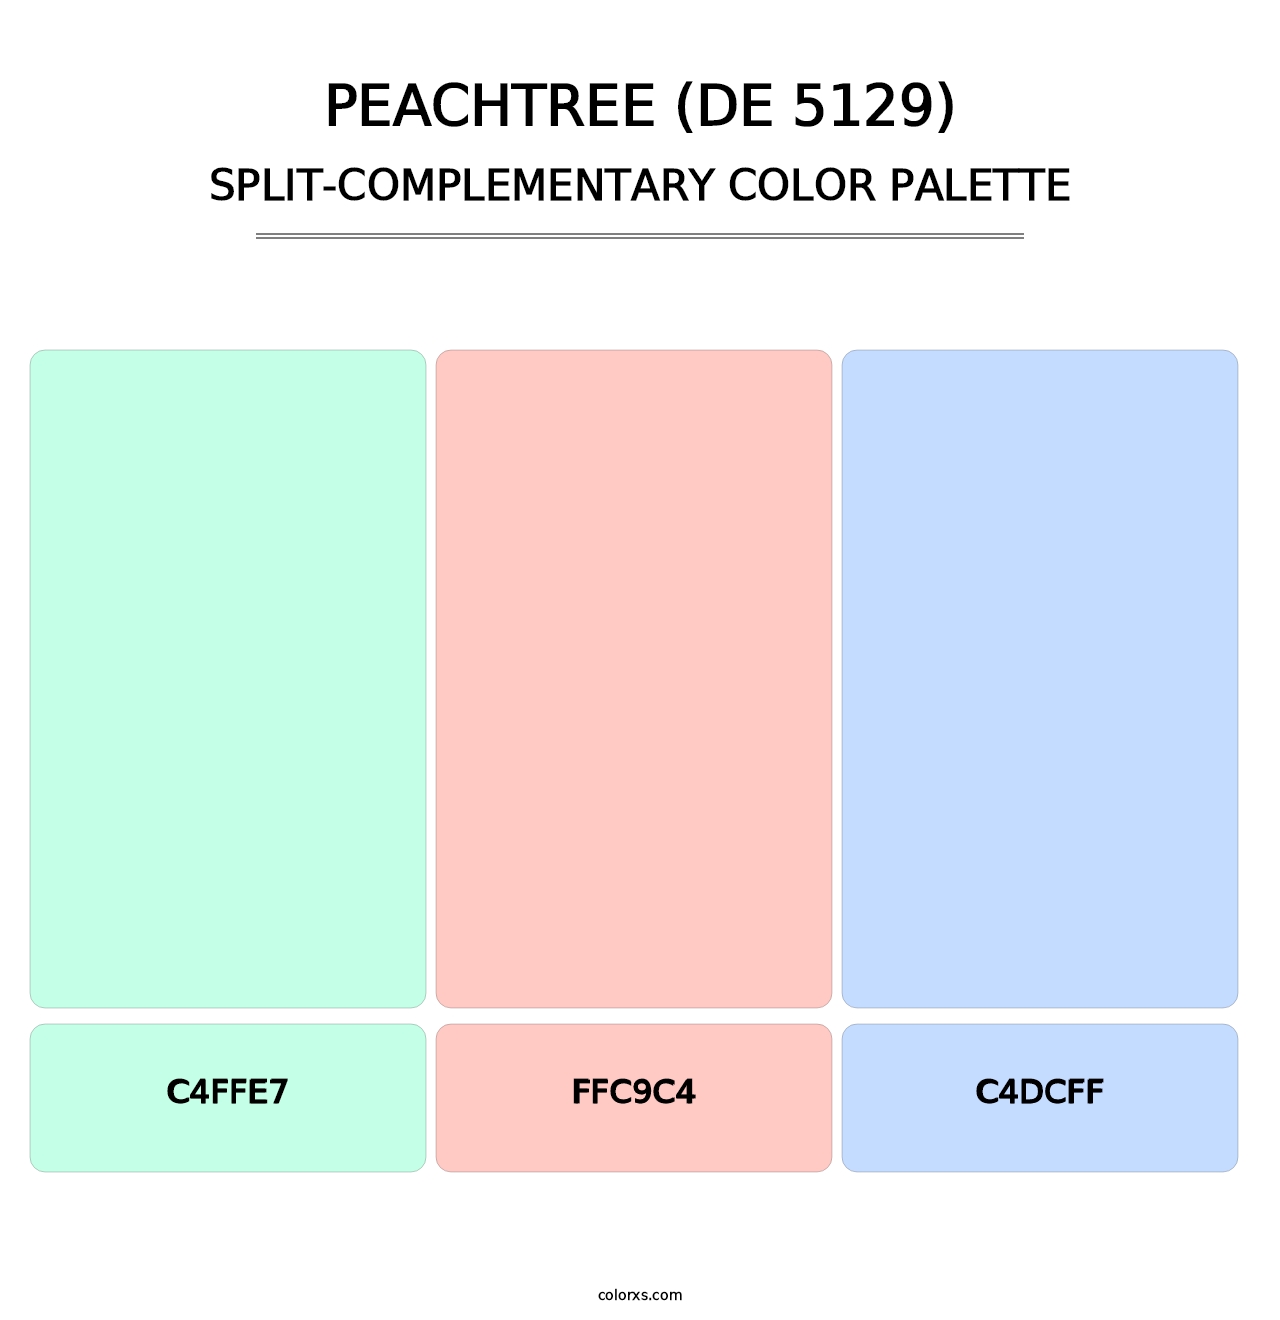 Peachtree (DE 5129) - Split-Complementary Color Palette